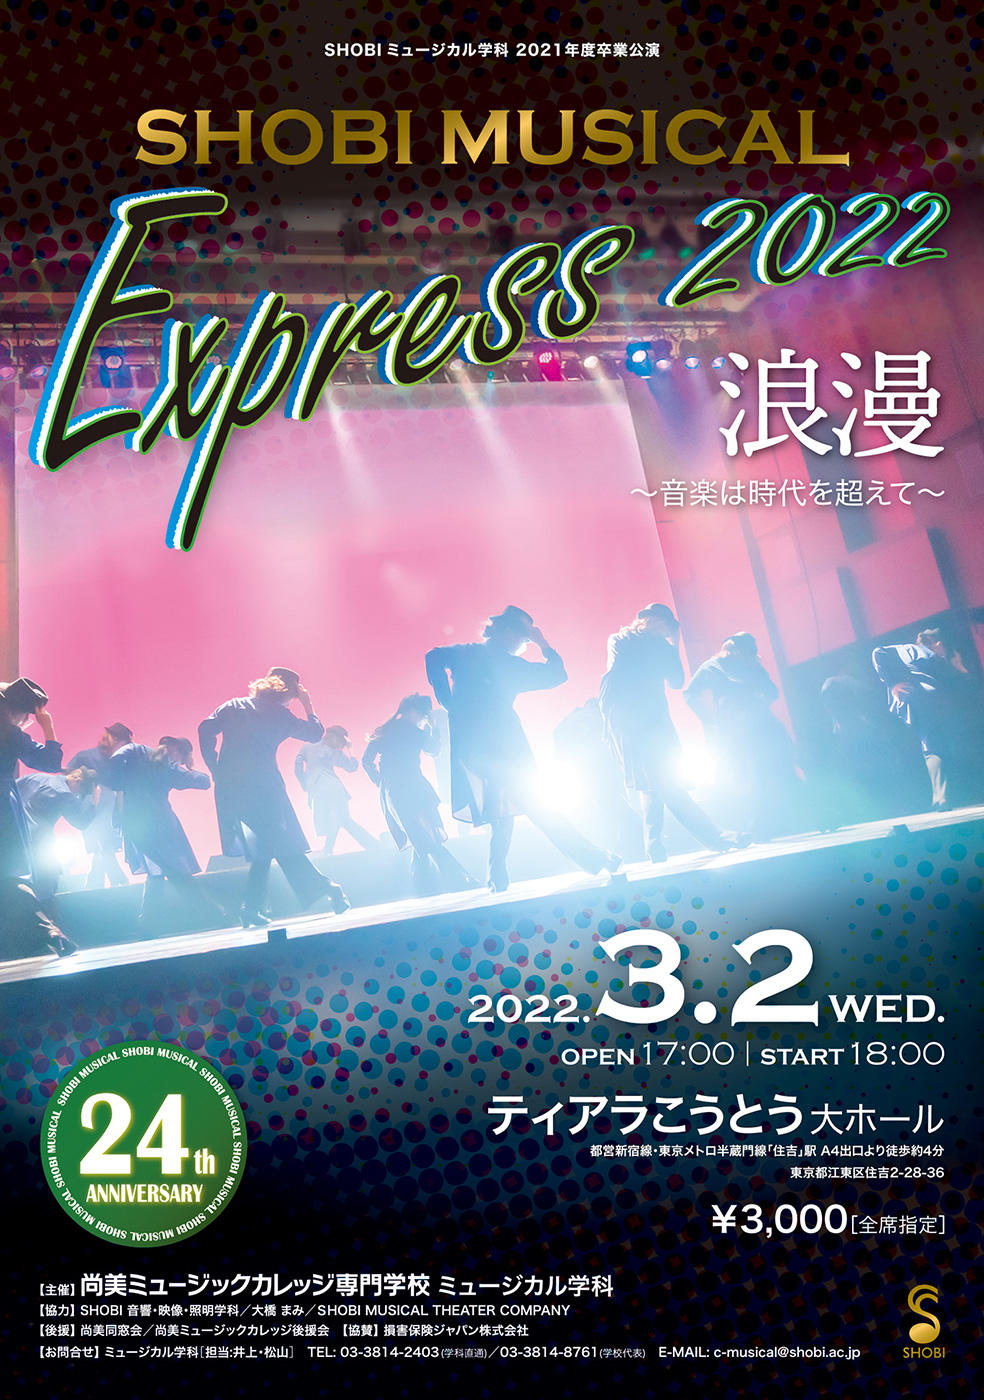 https://www.shobi.ac.jp/event/20220302_musical-express_01.jpg